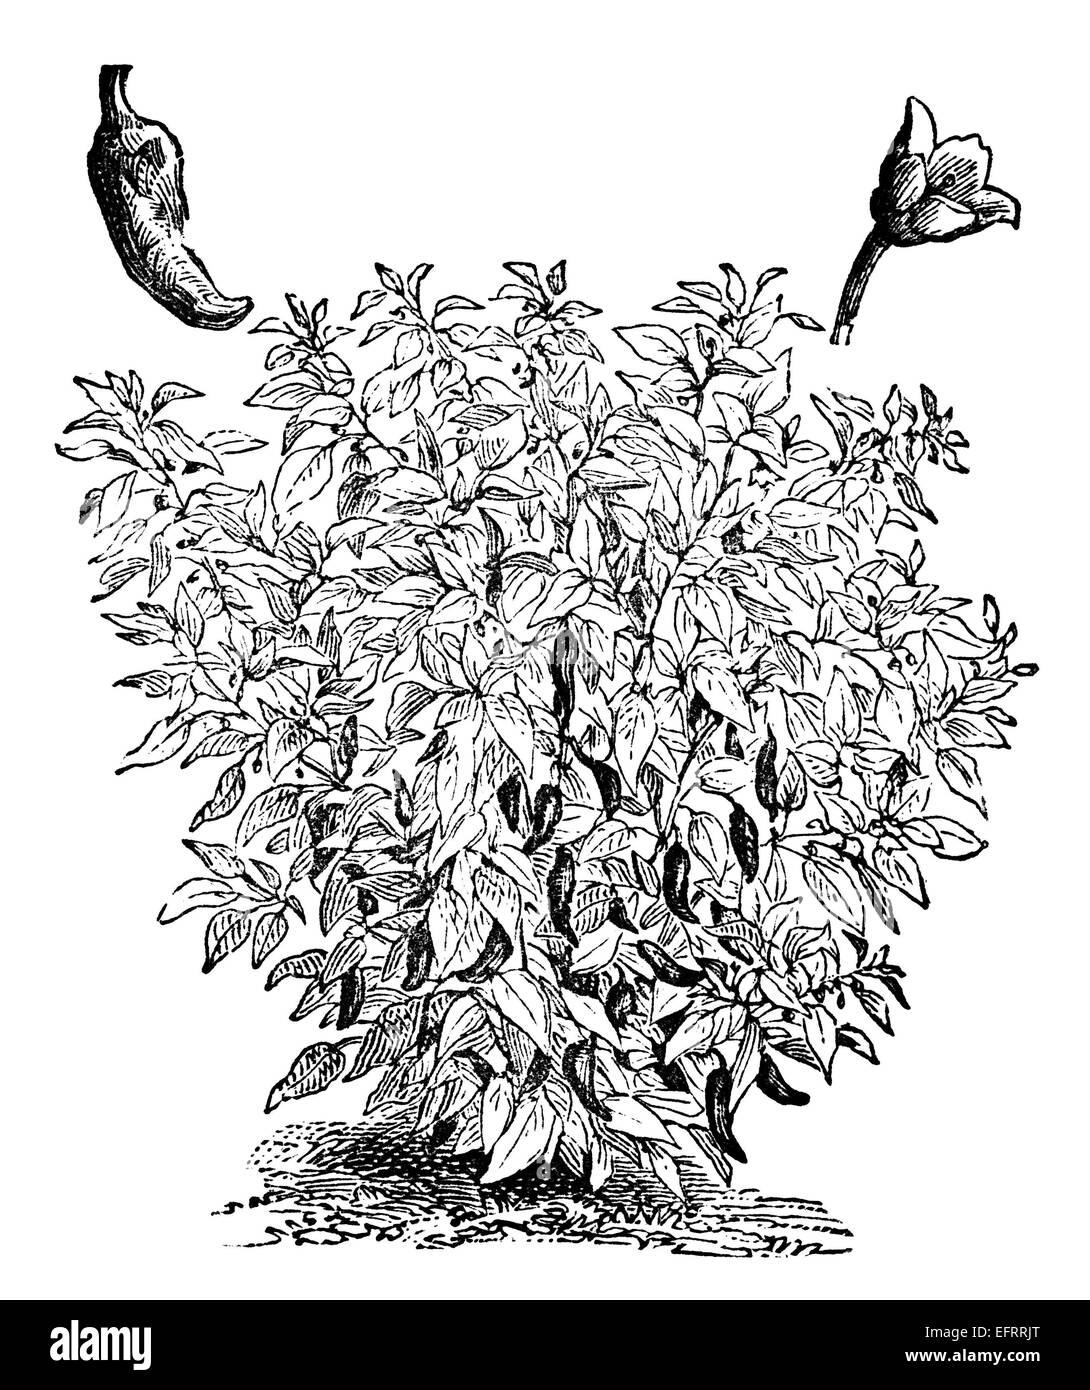 La gravure de l'époque victorienne d'un capiscum, poivre ou plante. Image restaurée numériquement à partir d'un milieu du xixe siècle l'encyclopédie. Banque D'Images